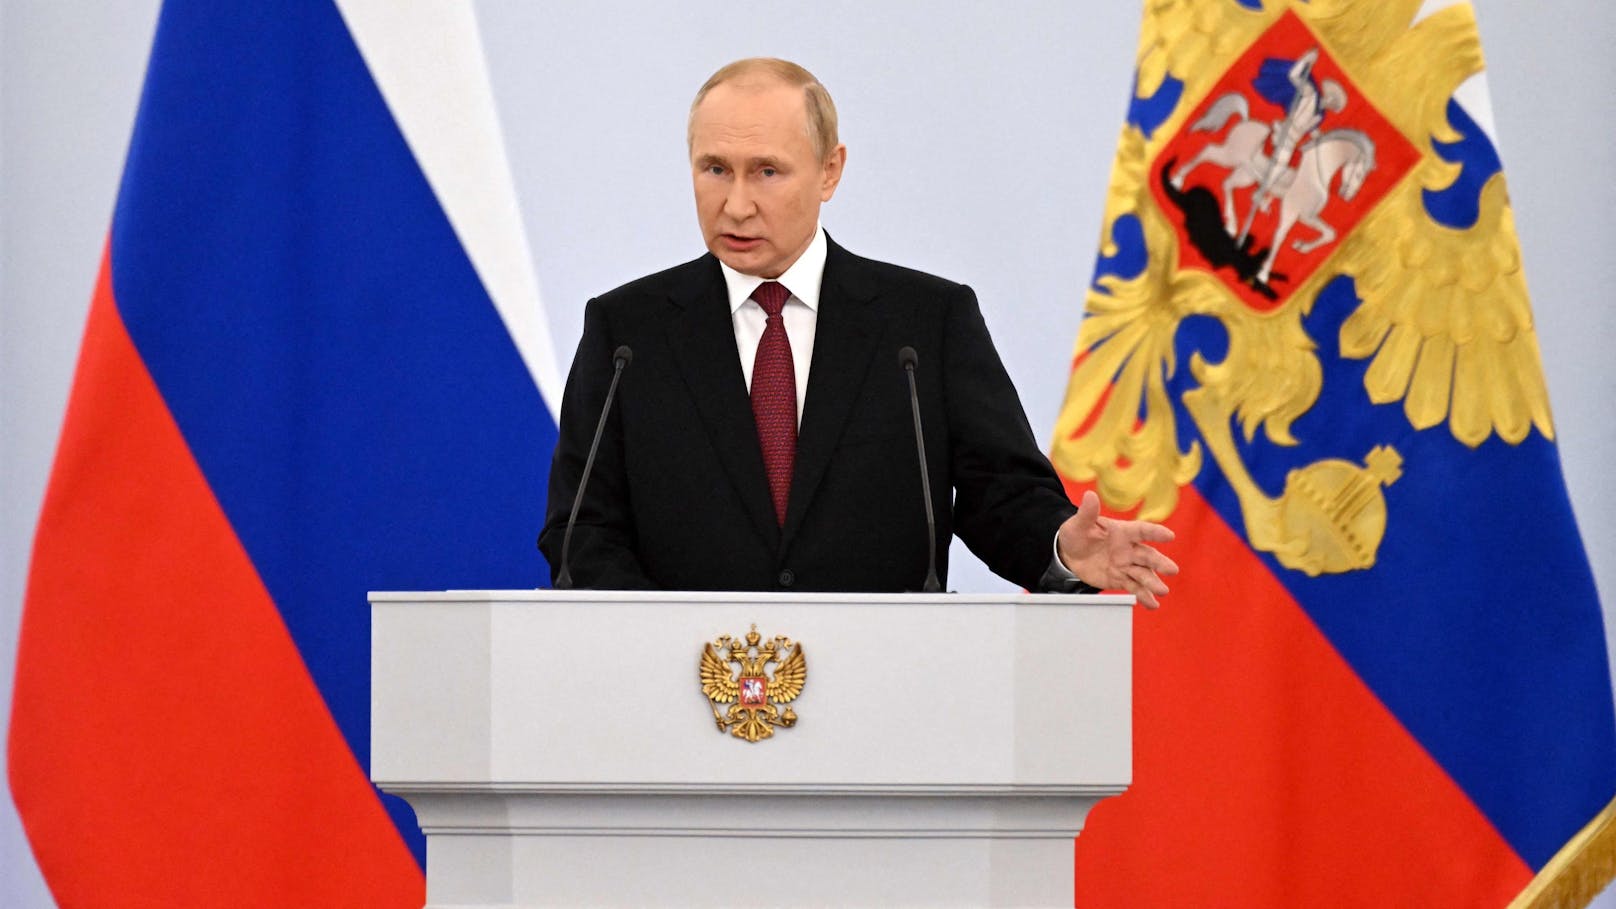 Kreml-Chef Wladimir Putin bei seiner Rede zur Annexion von vier ukrainischen Gebieten.